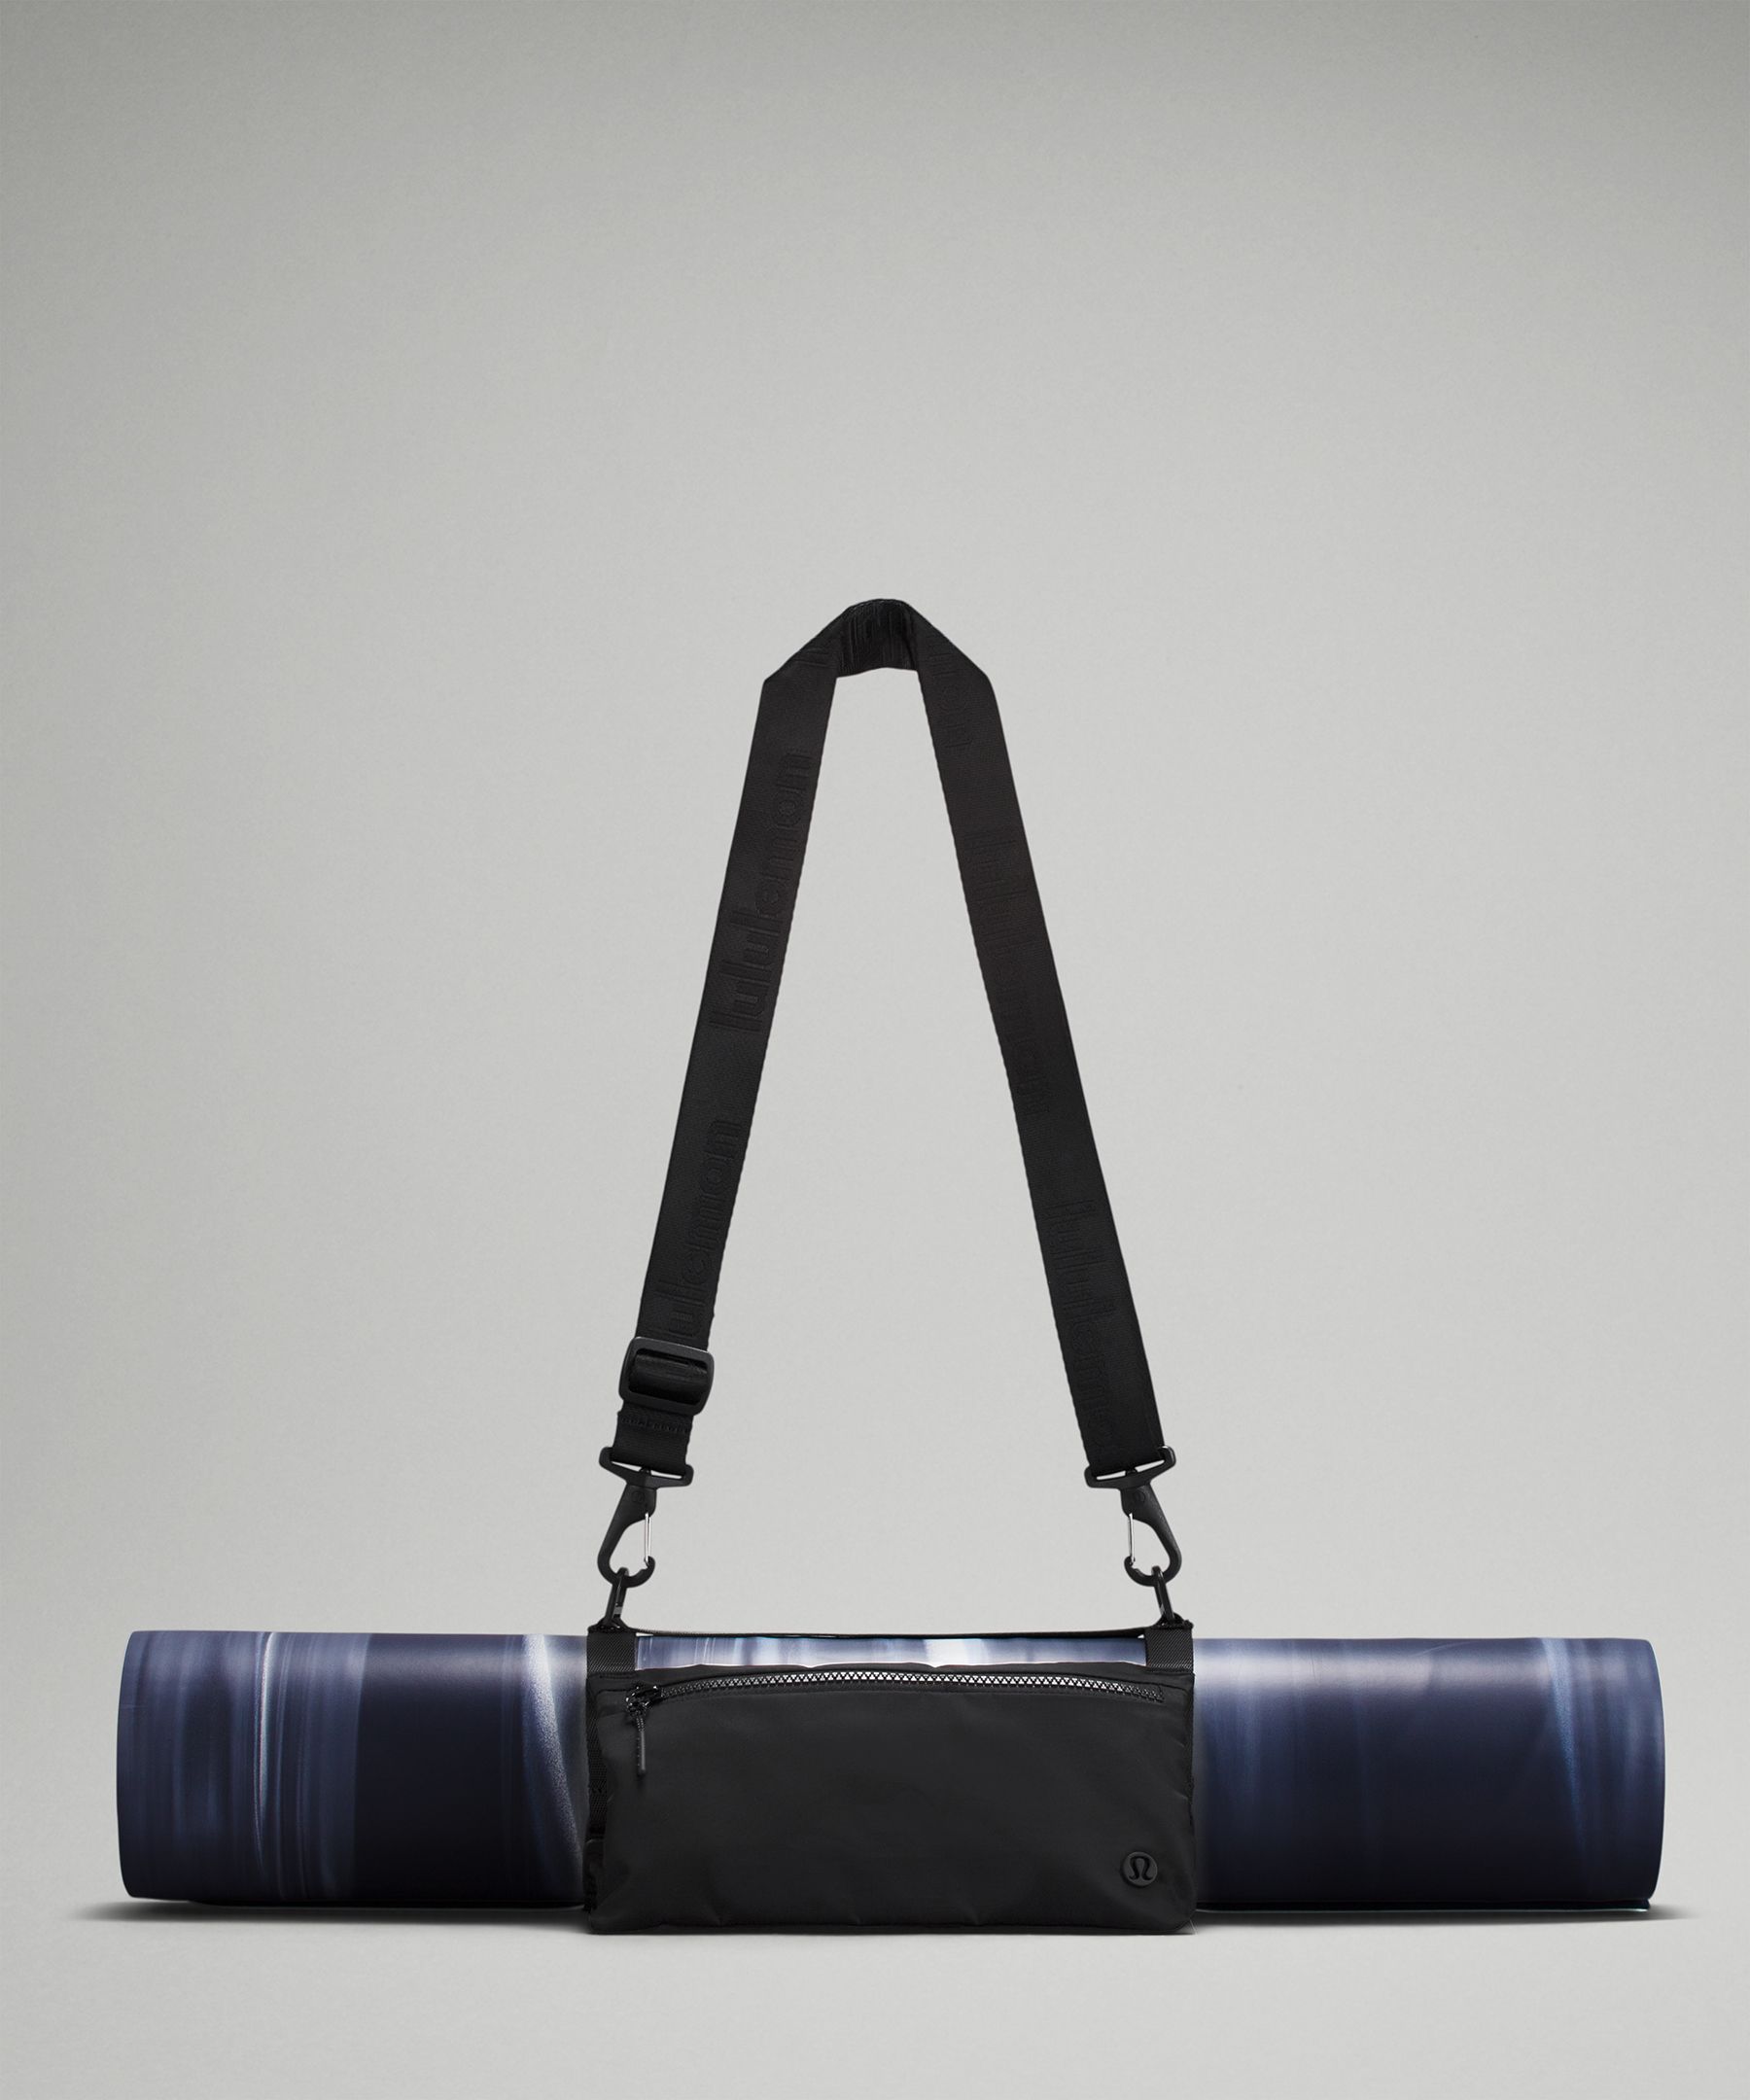 Lululemon Yoga mat carrier bag with shoulder strap black